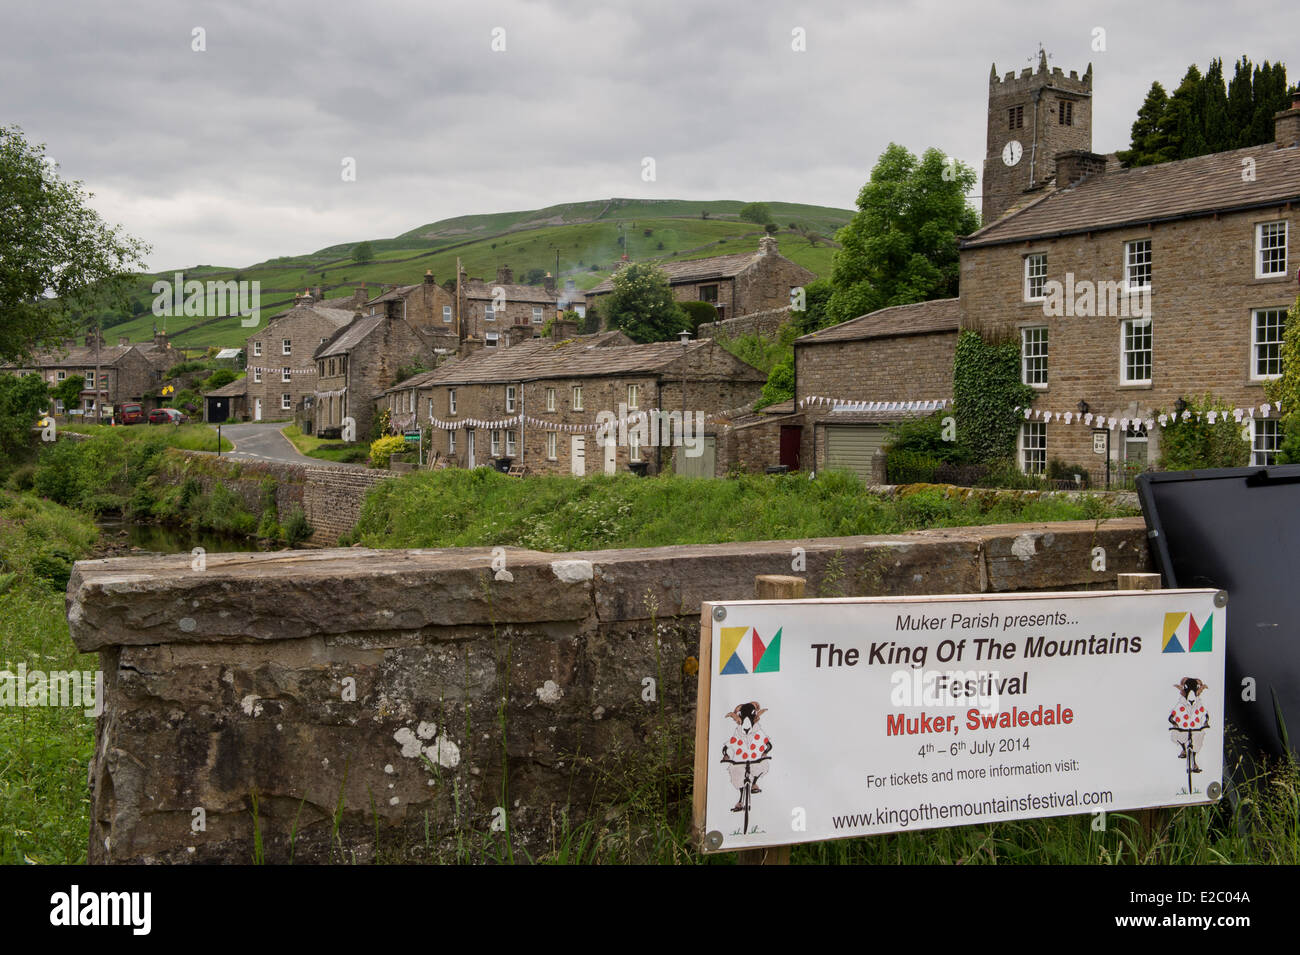 Banner Werbung TDF, traditionelle Stein am Straßenrand Cottages & Hügel jenseits - Muker, malerischen Dorf in Swaledale, Yorkshire Dales, England, UK. Stockfoto